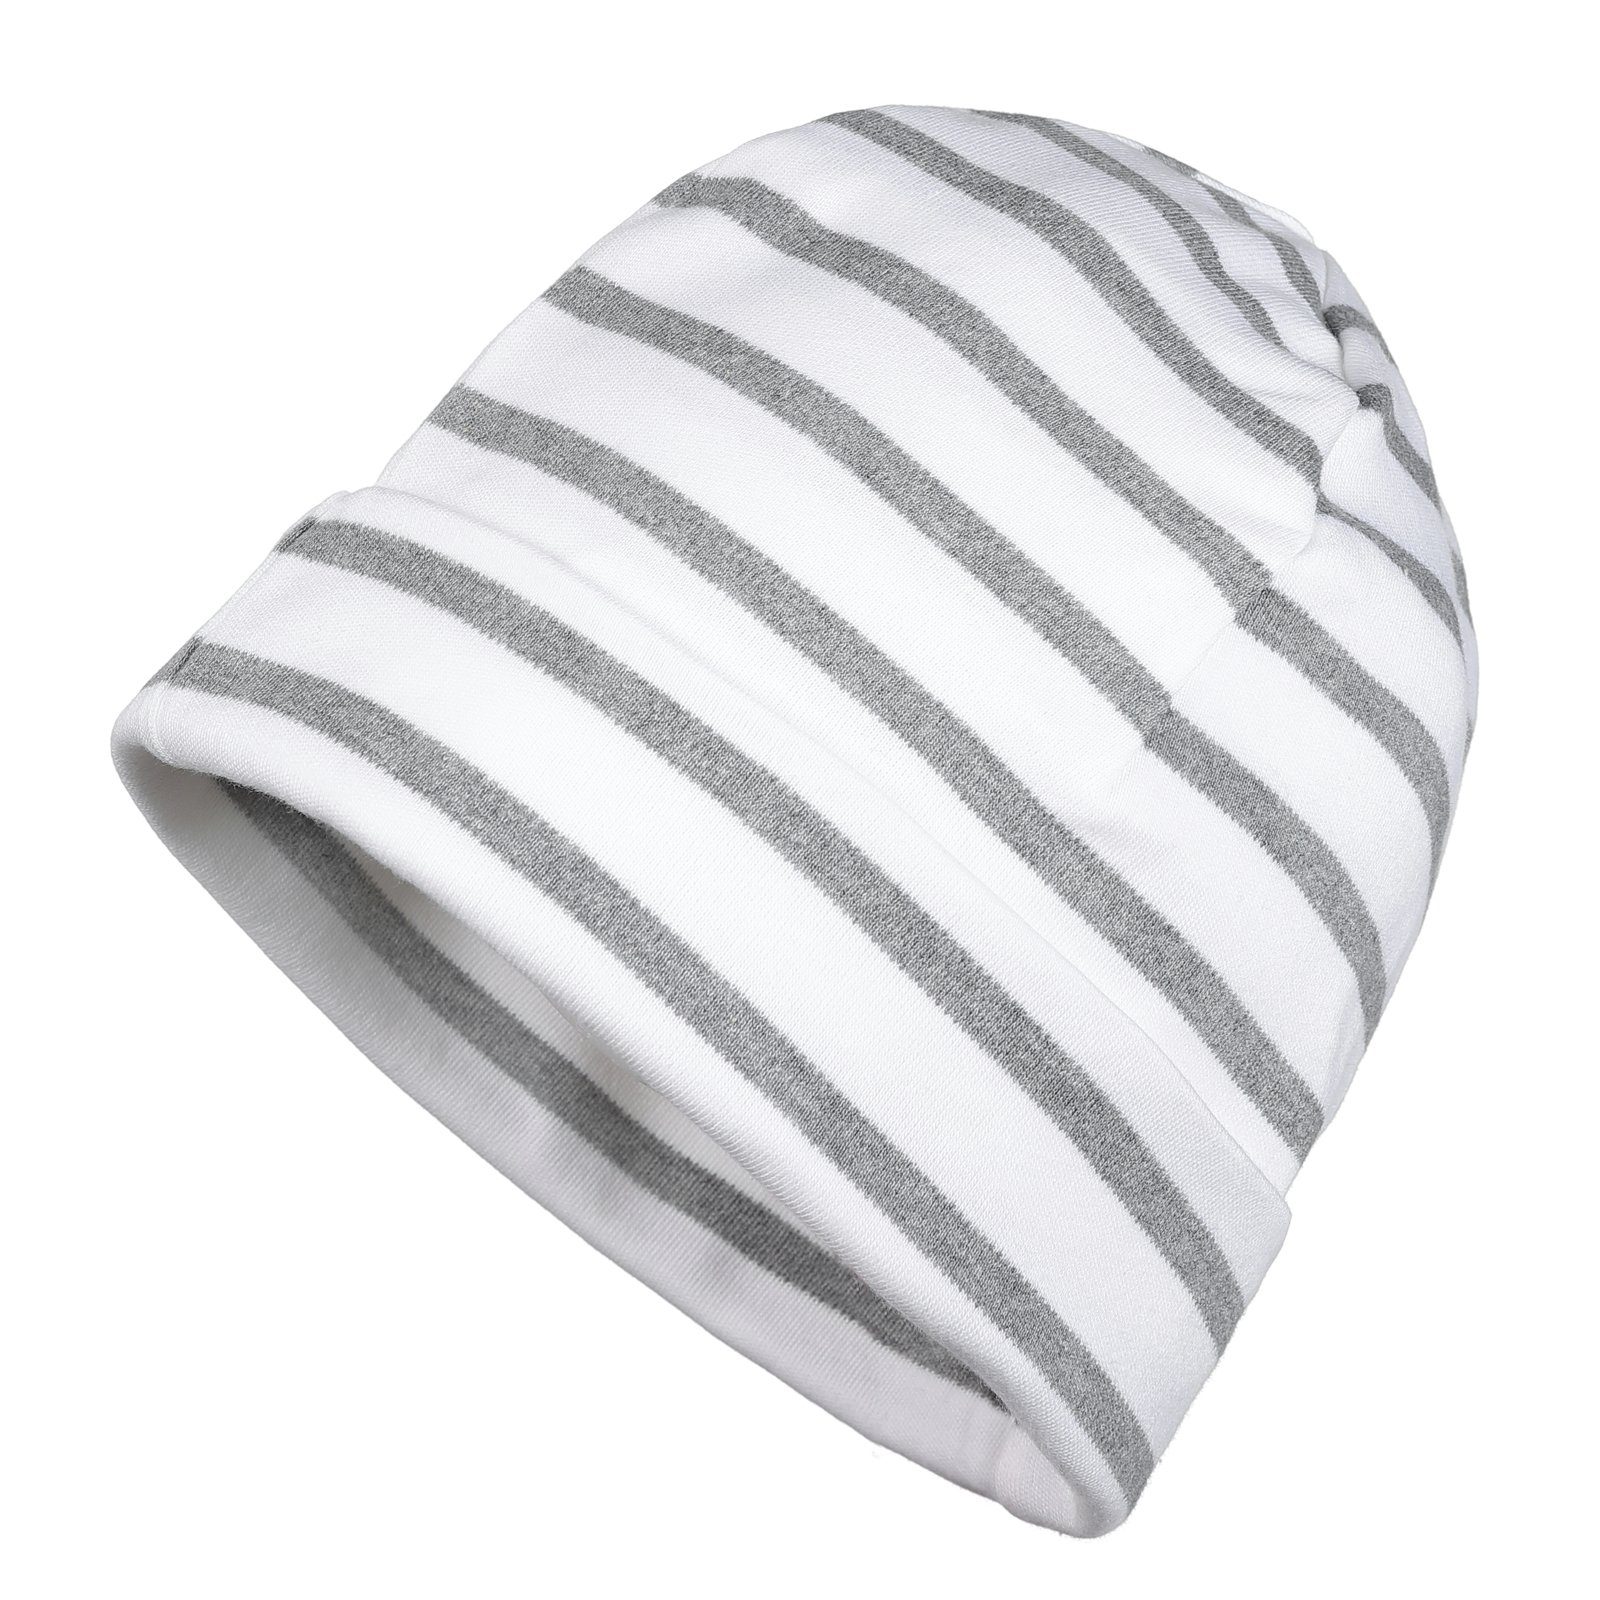 modAS Strickmütze Unisex Mütze Streifen für Kinder & Erwachsene - Ringelmütze Baumwolle (19) weiß / grau-melange